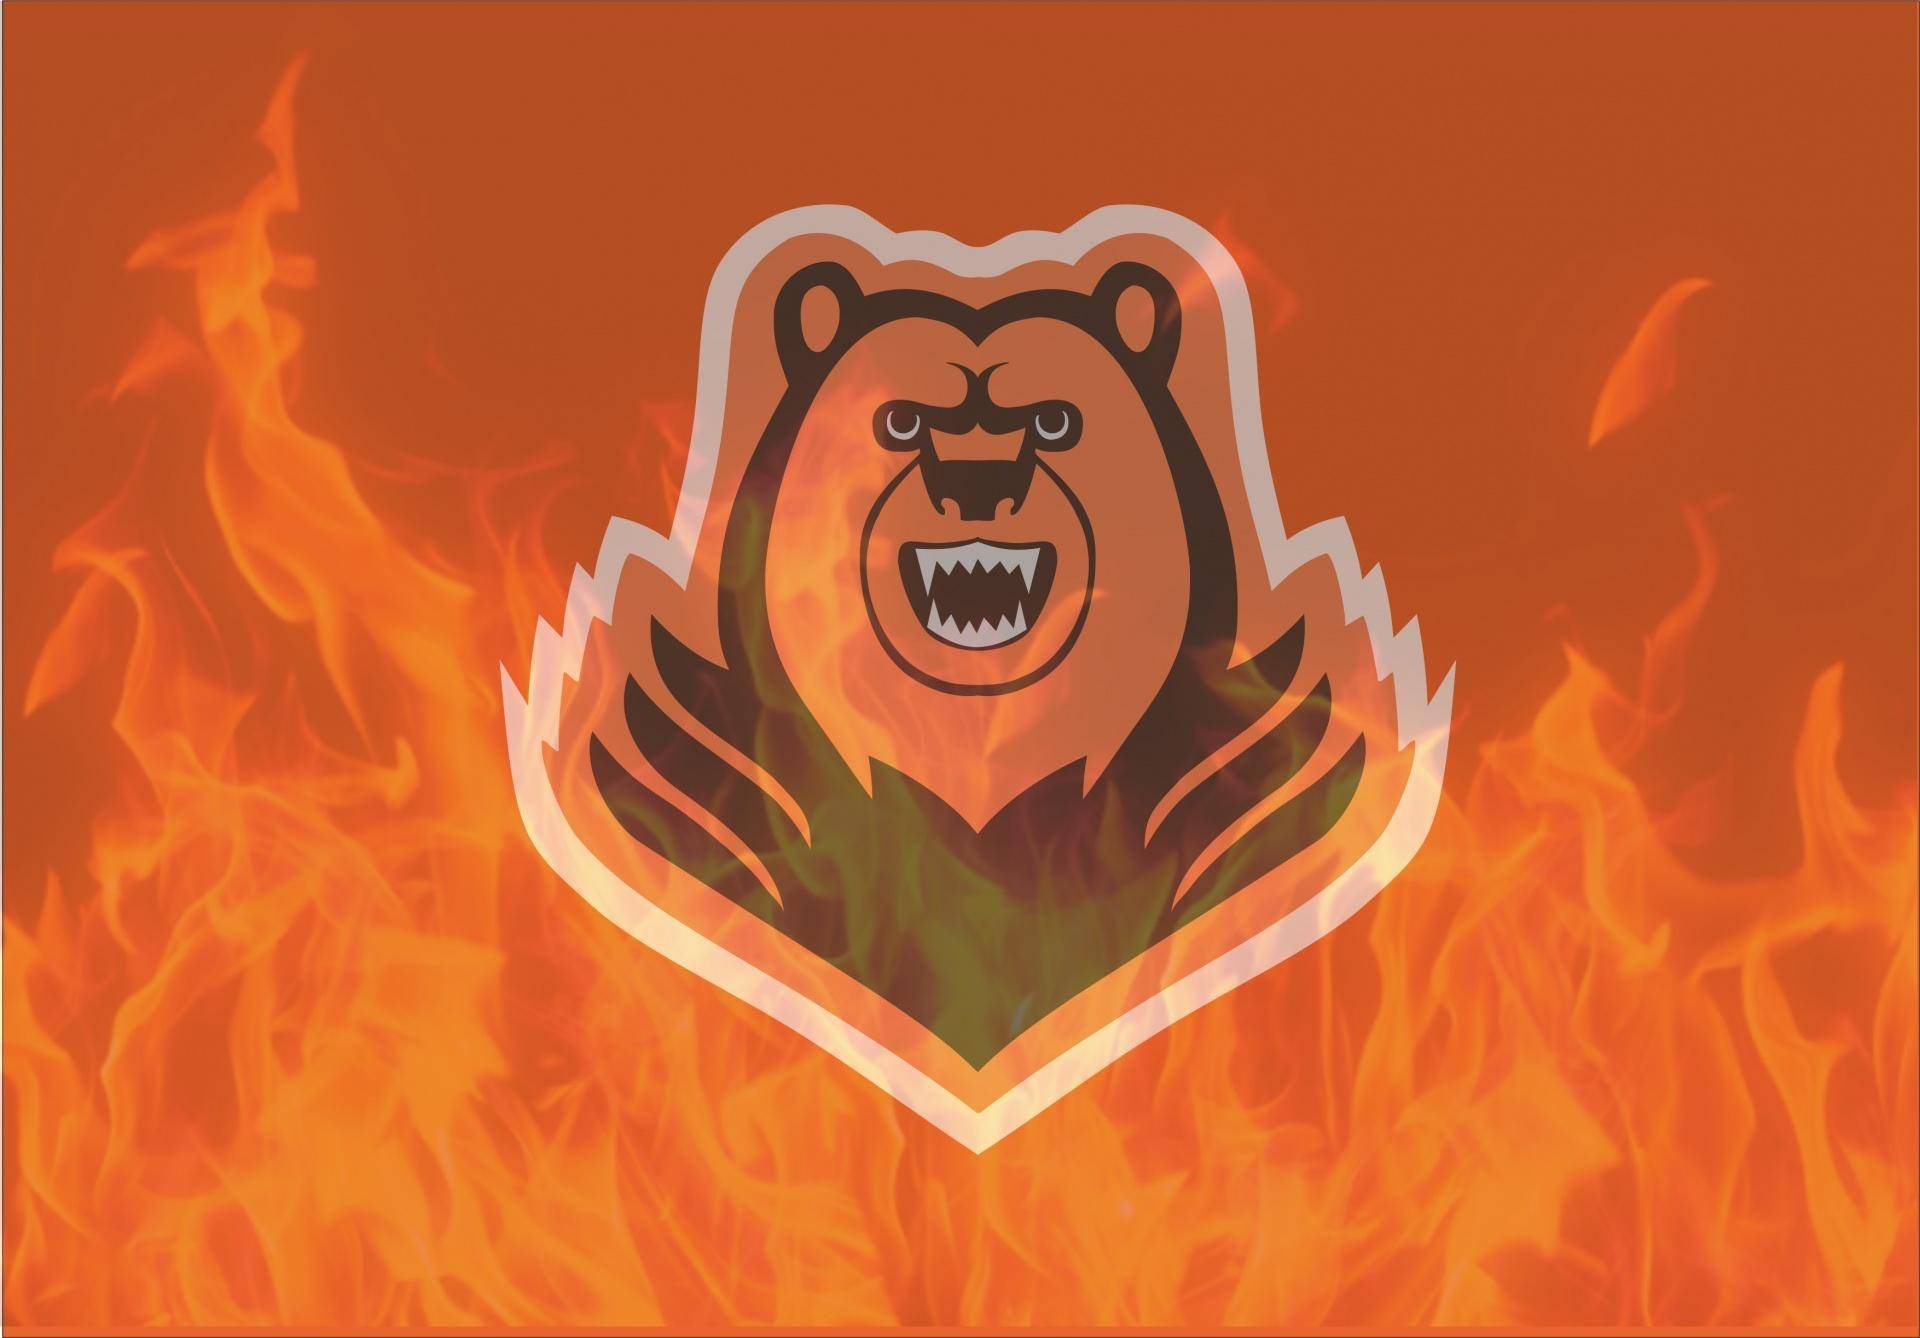 logo on fire.jpg